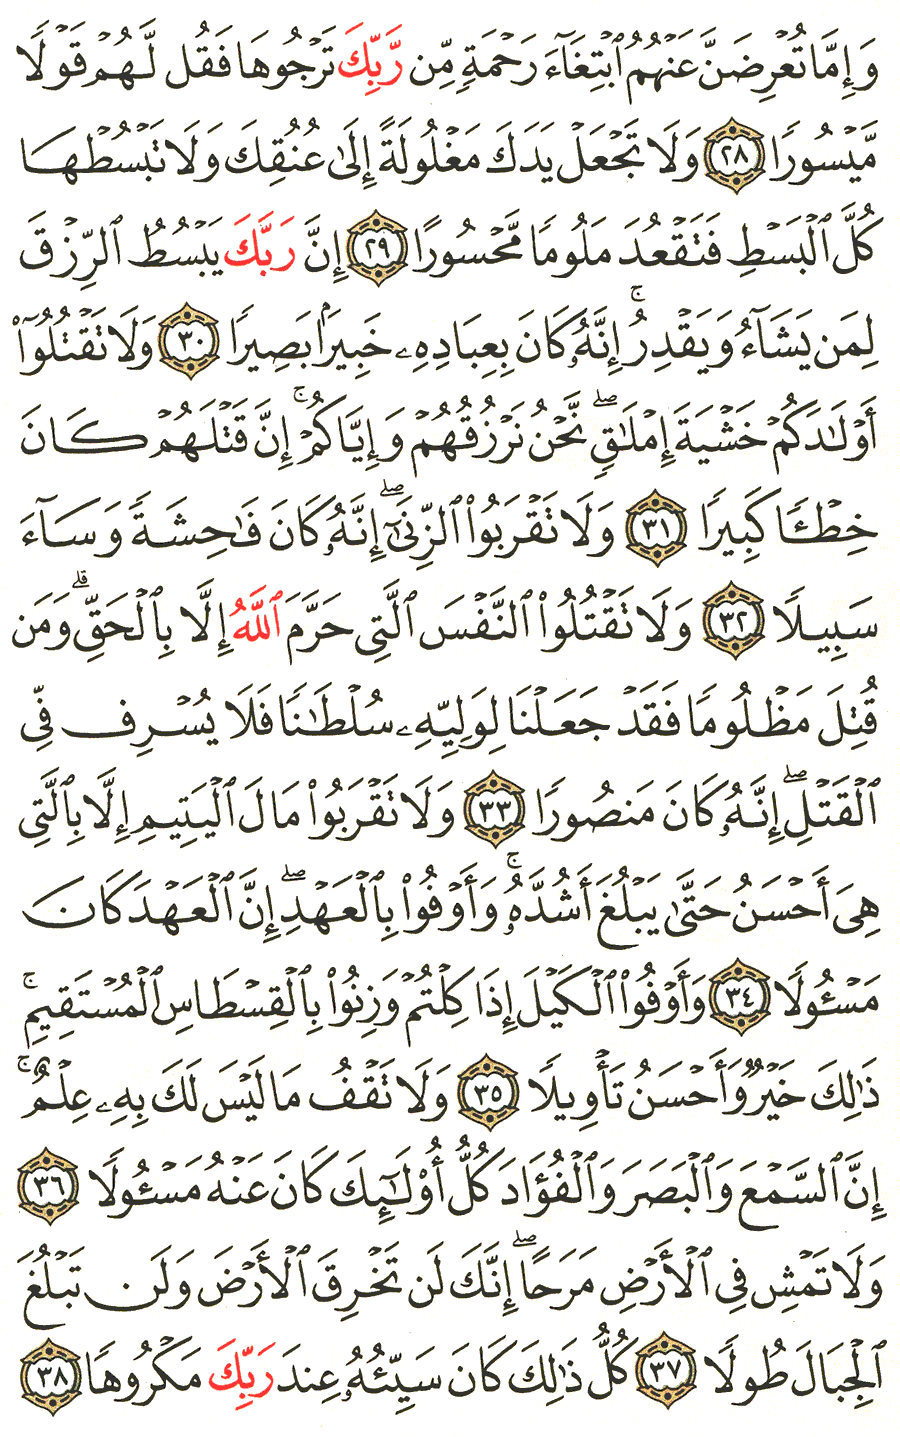 الصفحة رقم 285  من القرآن الكريم مكتوبة من المصحف